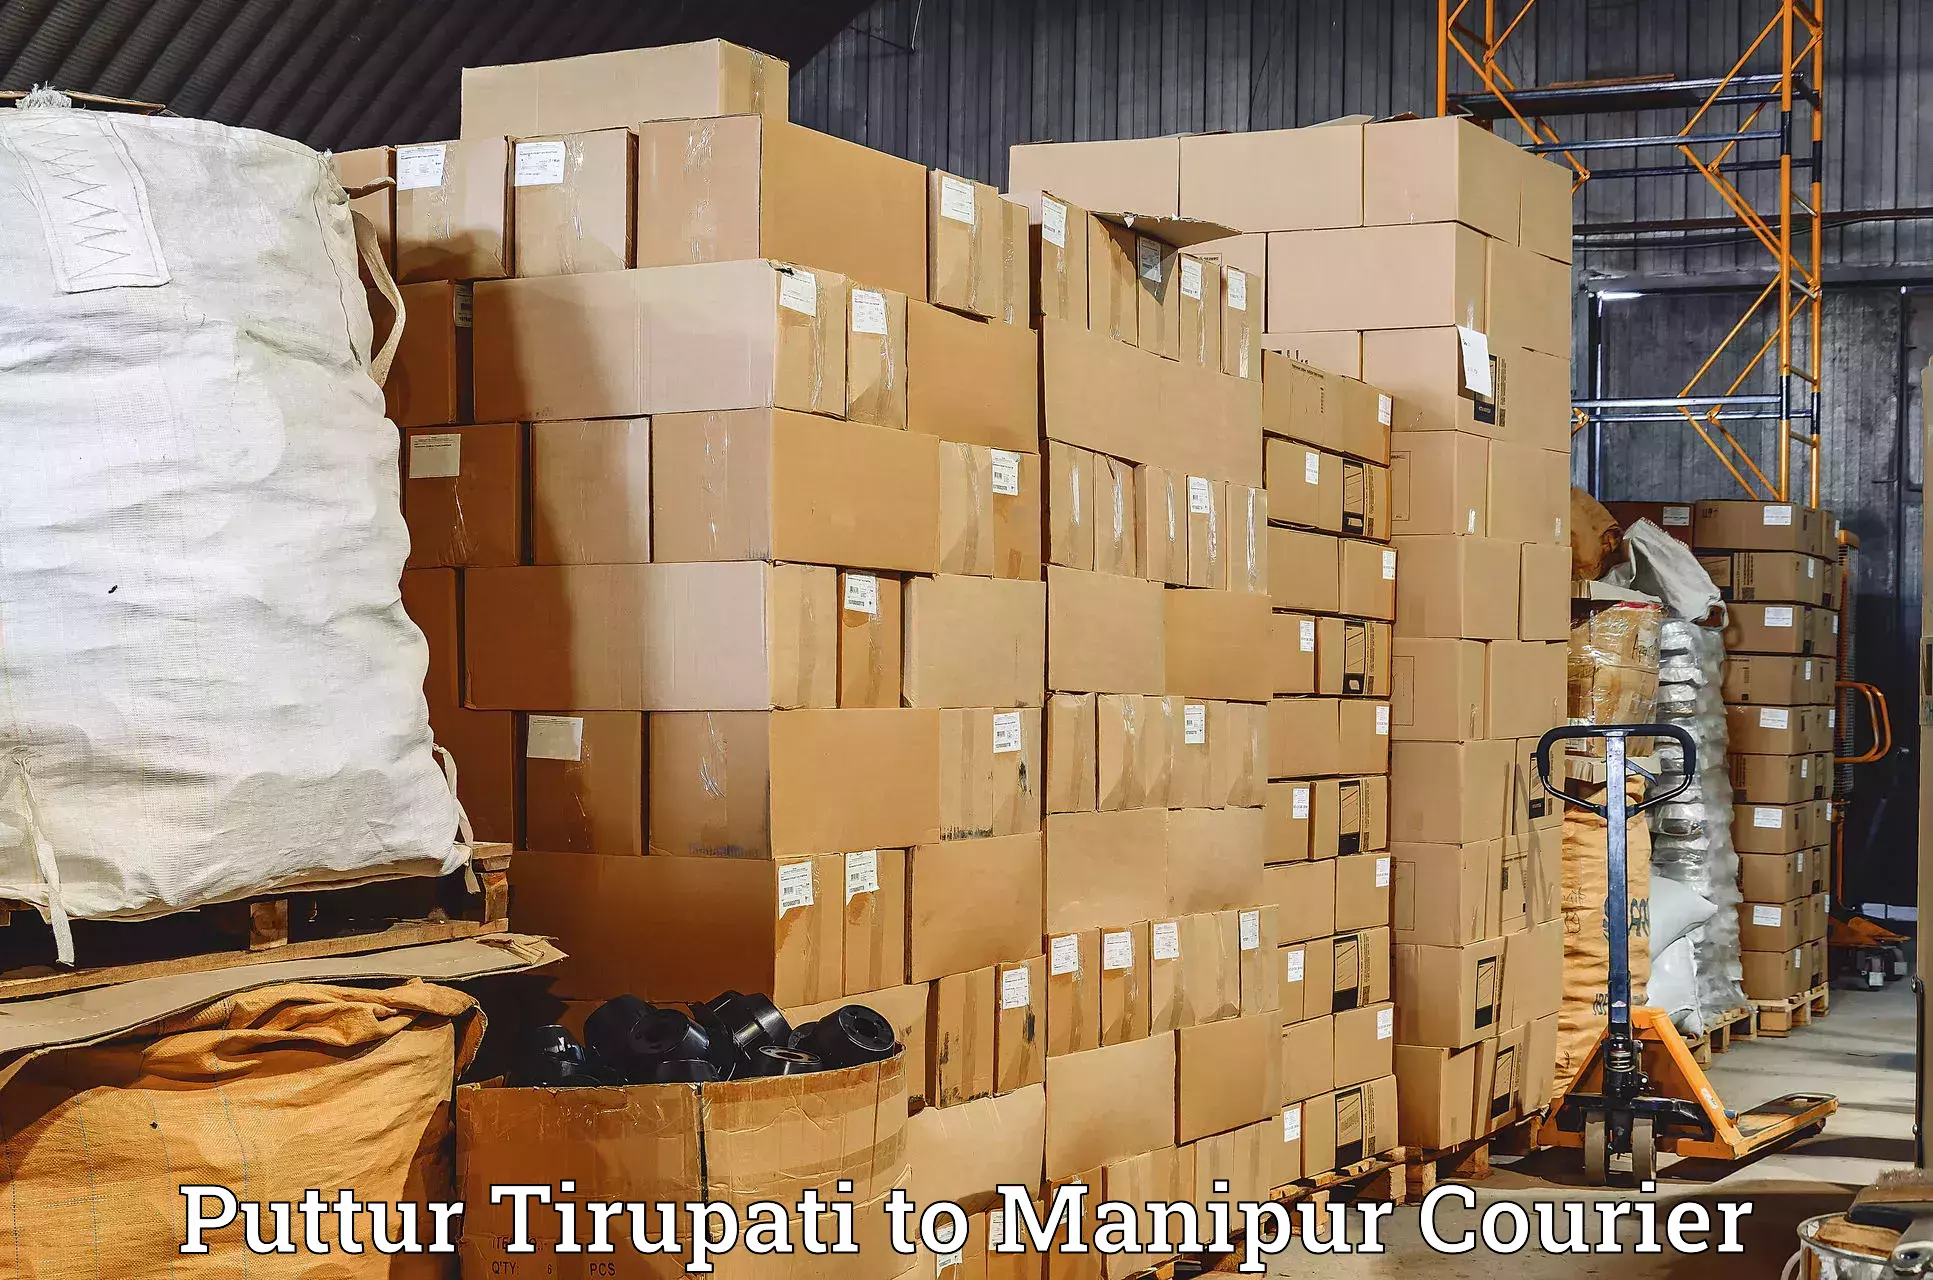 Business delivery service Puttur Tirupati to Ukhrul